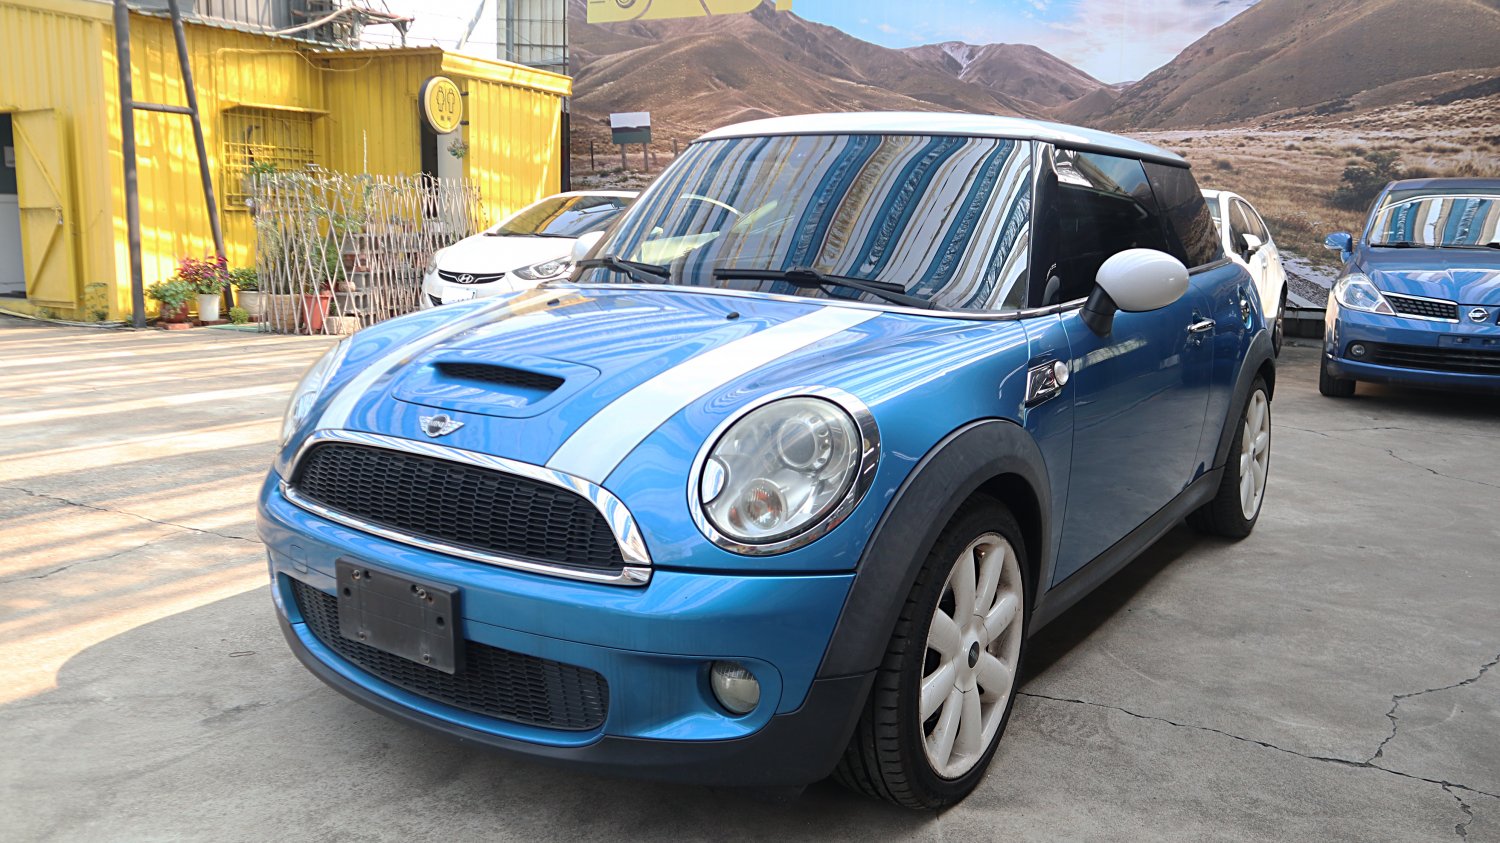 Mini 迷你 ／ Cooper S ／ 2007年 ／ 2007年Mini Cooper S 藍白色 迷你中古車 ／ 九州欣旺汽車 (台南)